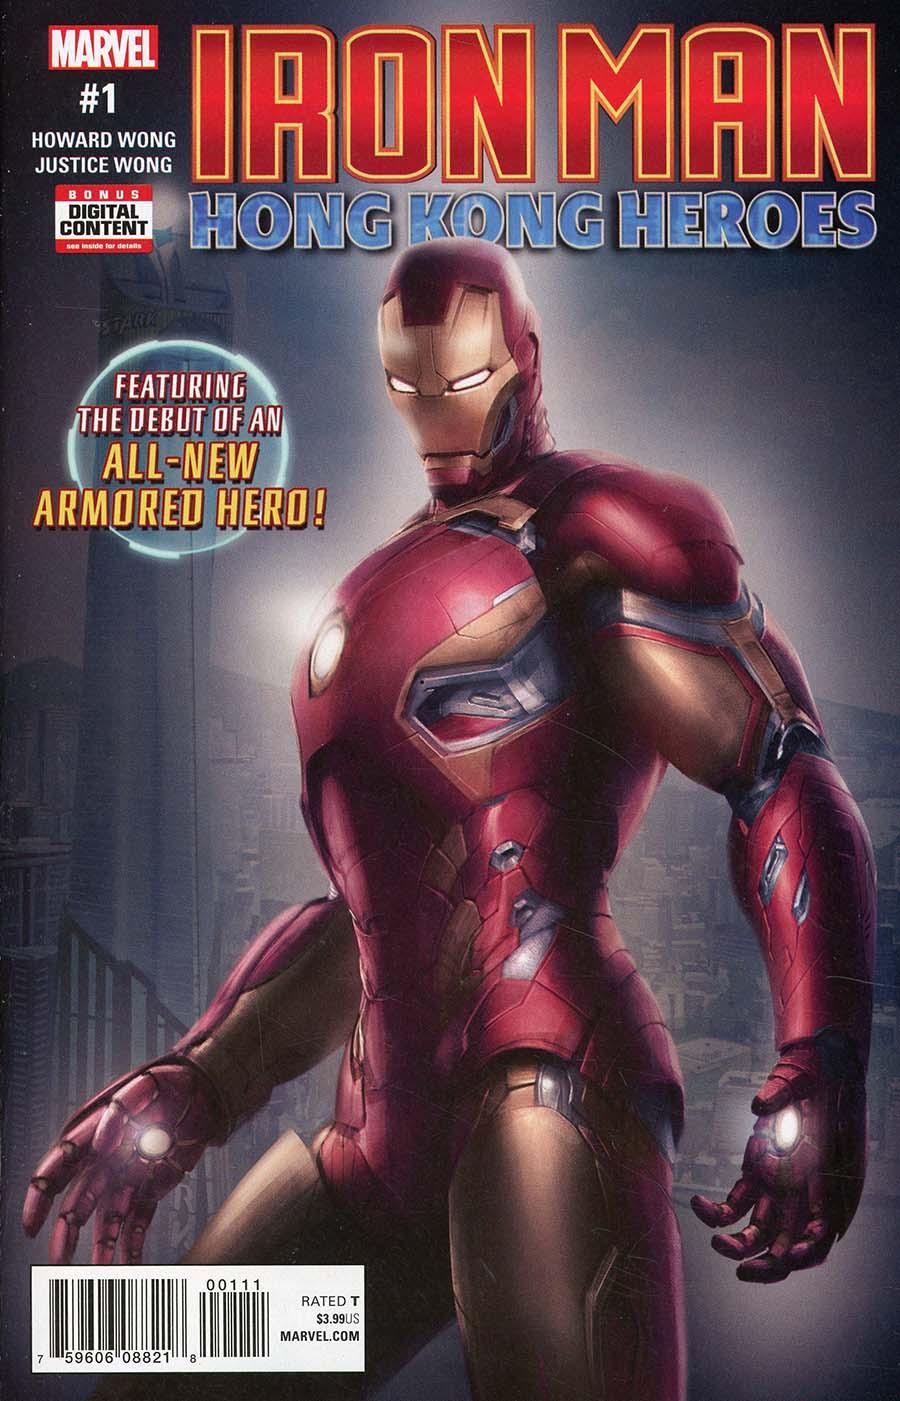 Iron Man Hong Kong Heroes Vol. 1 #1